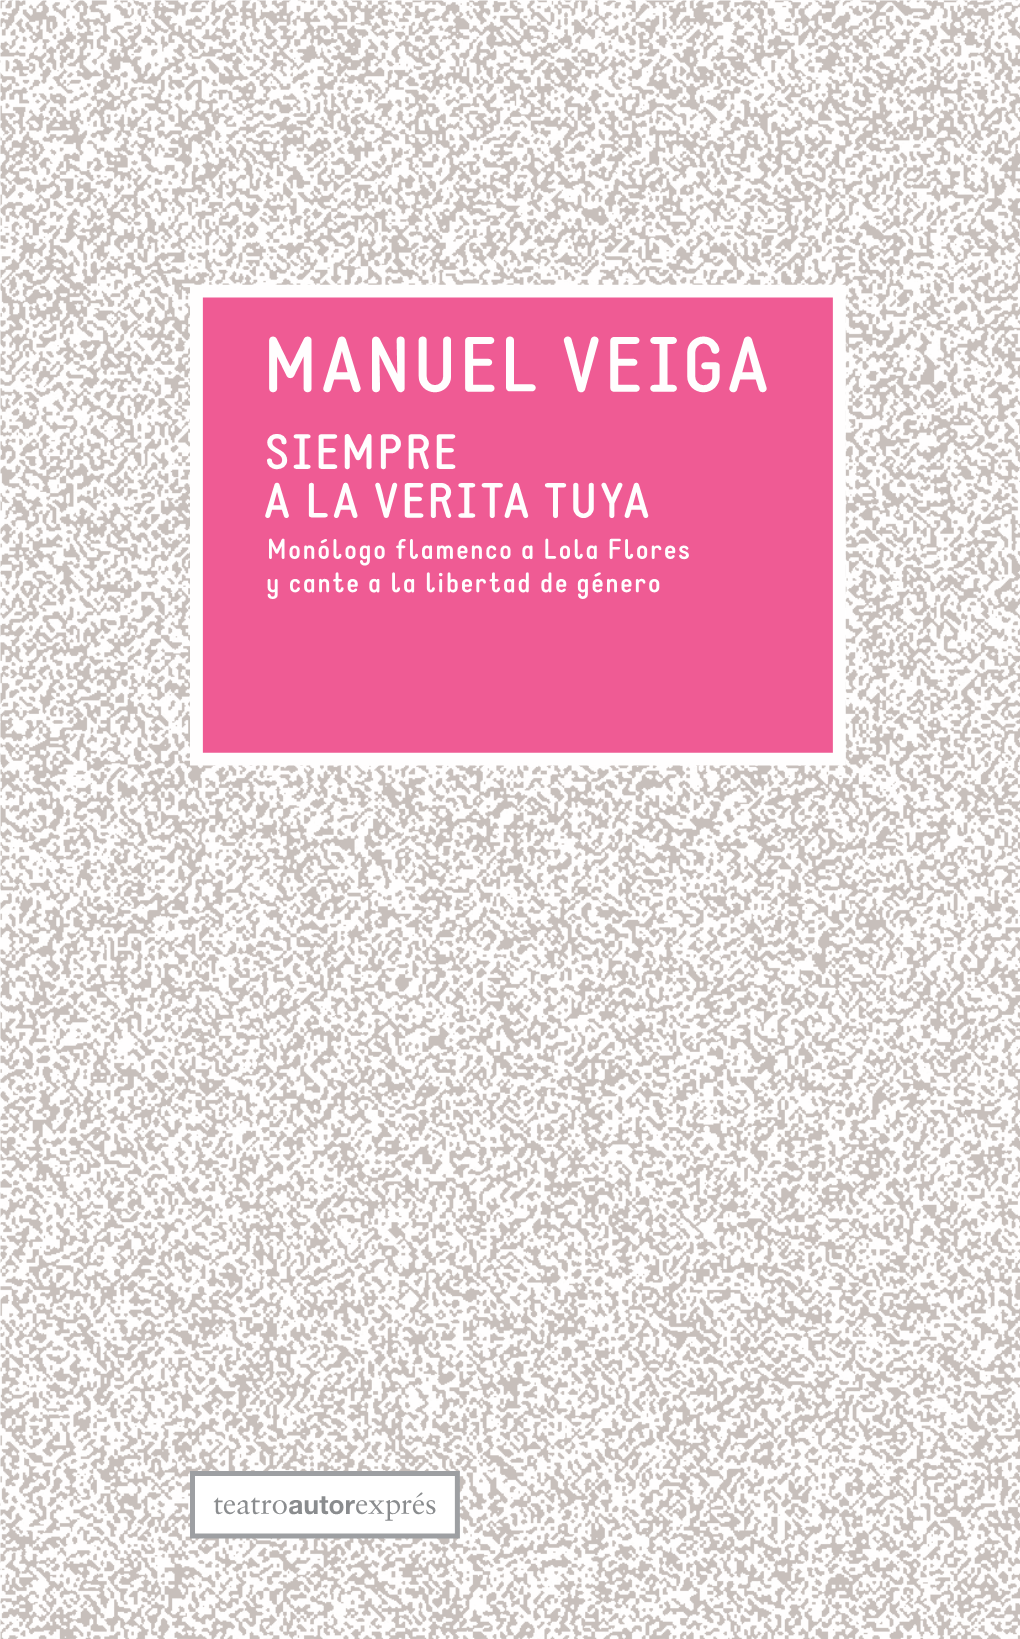 Manuel Veiga Siempre a La Verita Tuya